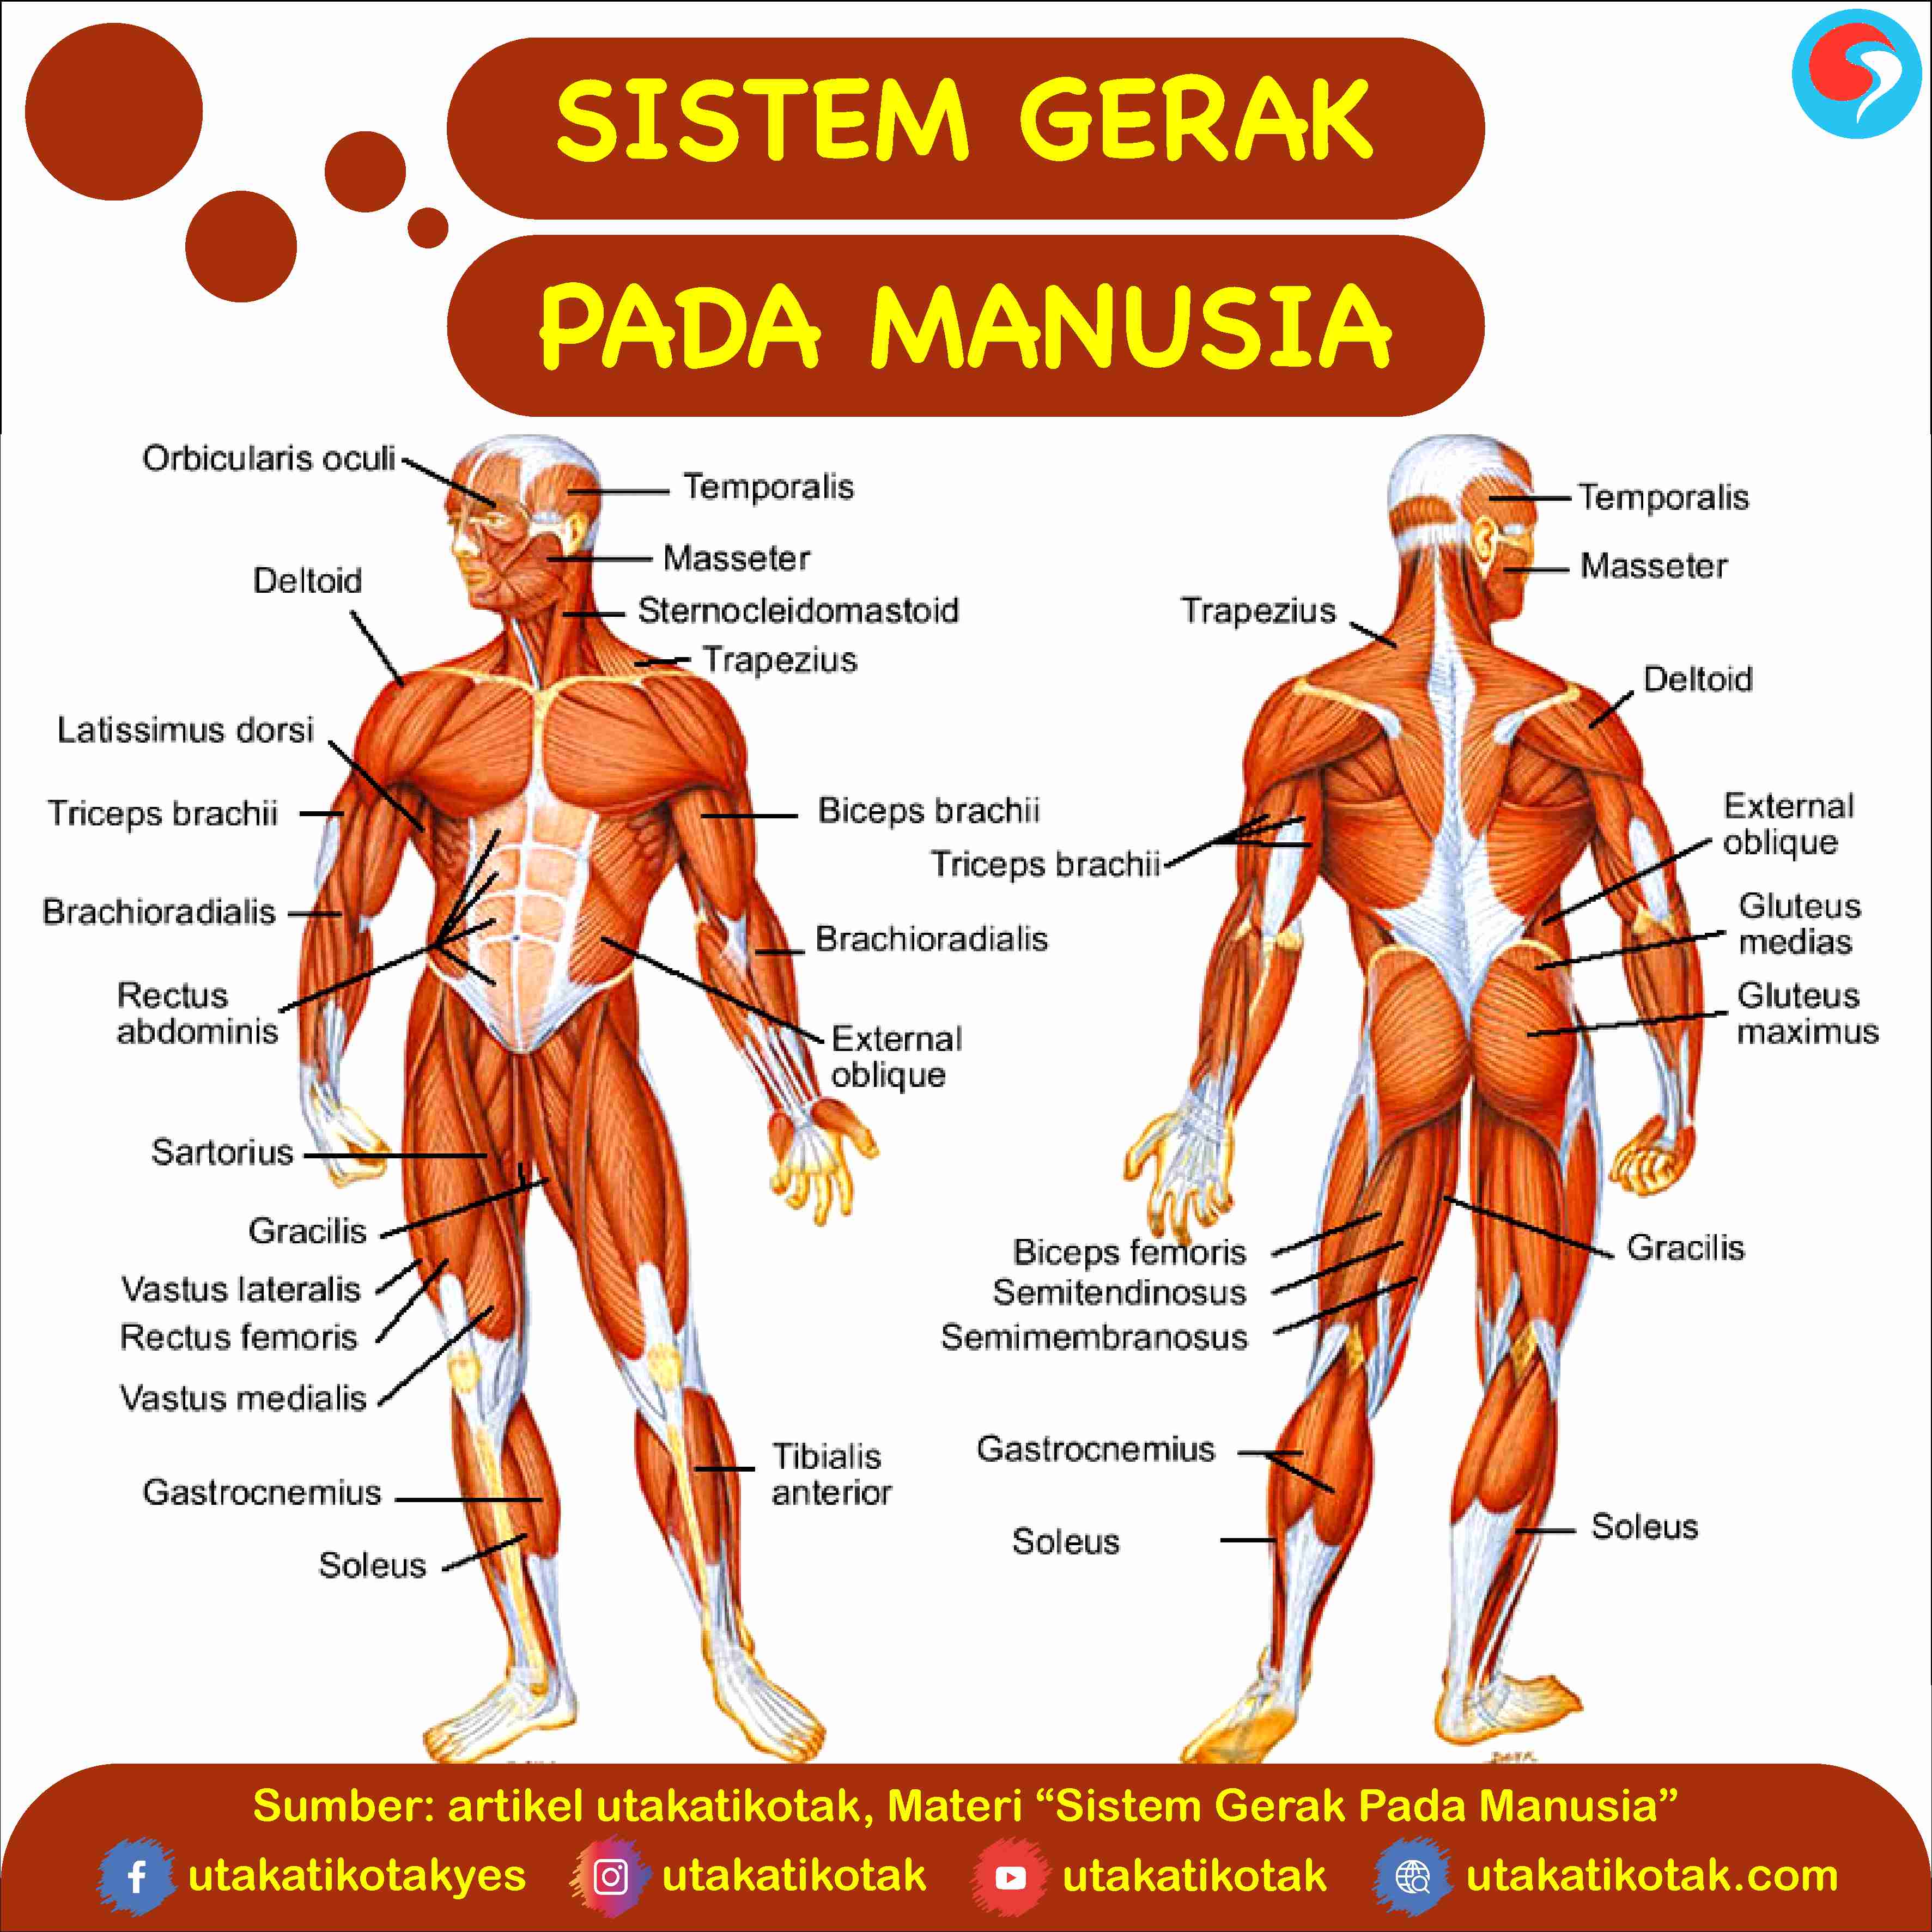 Sistem Gerak pada Manusia (Rangka, Sendi, dan Otot)